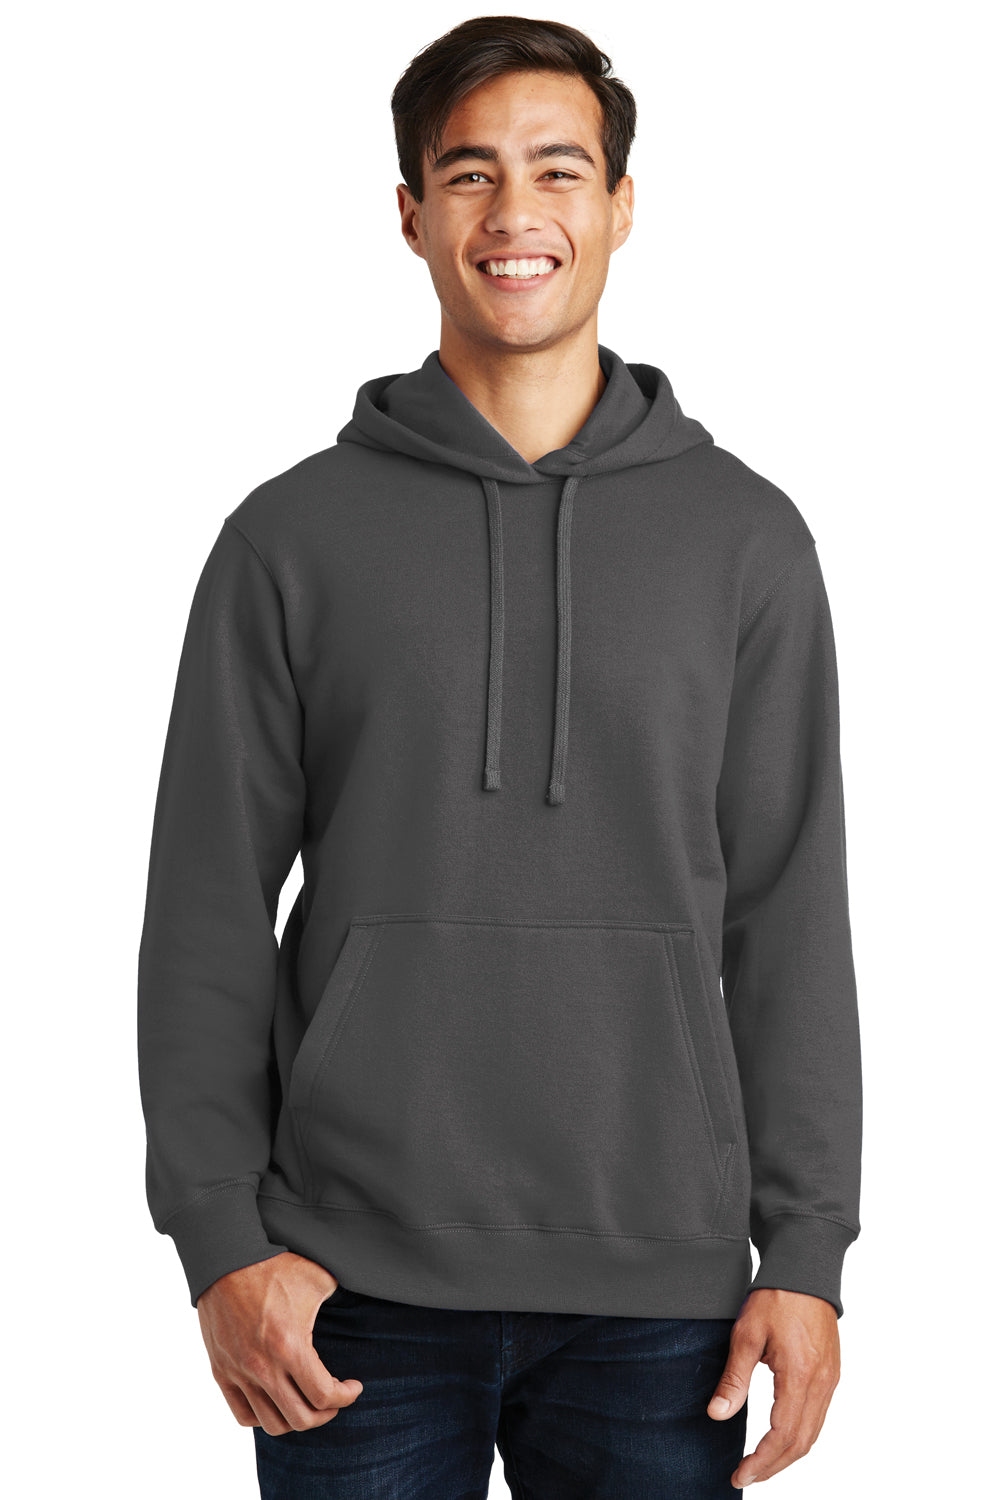 Port & Company PC850H Mens Fan Favorite Fleece Hooded Sweatshirt Hoodie Charcoal Grey Front